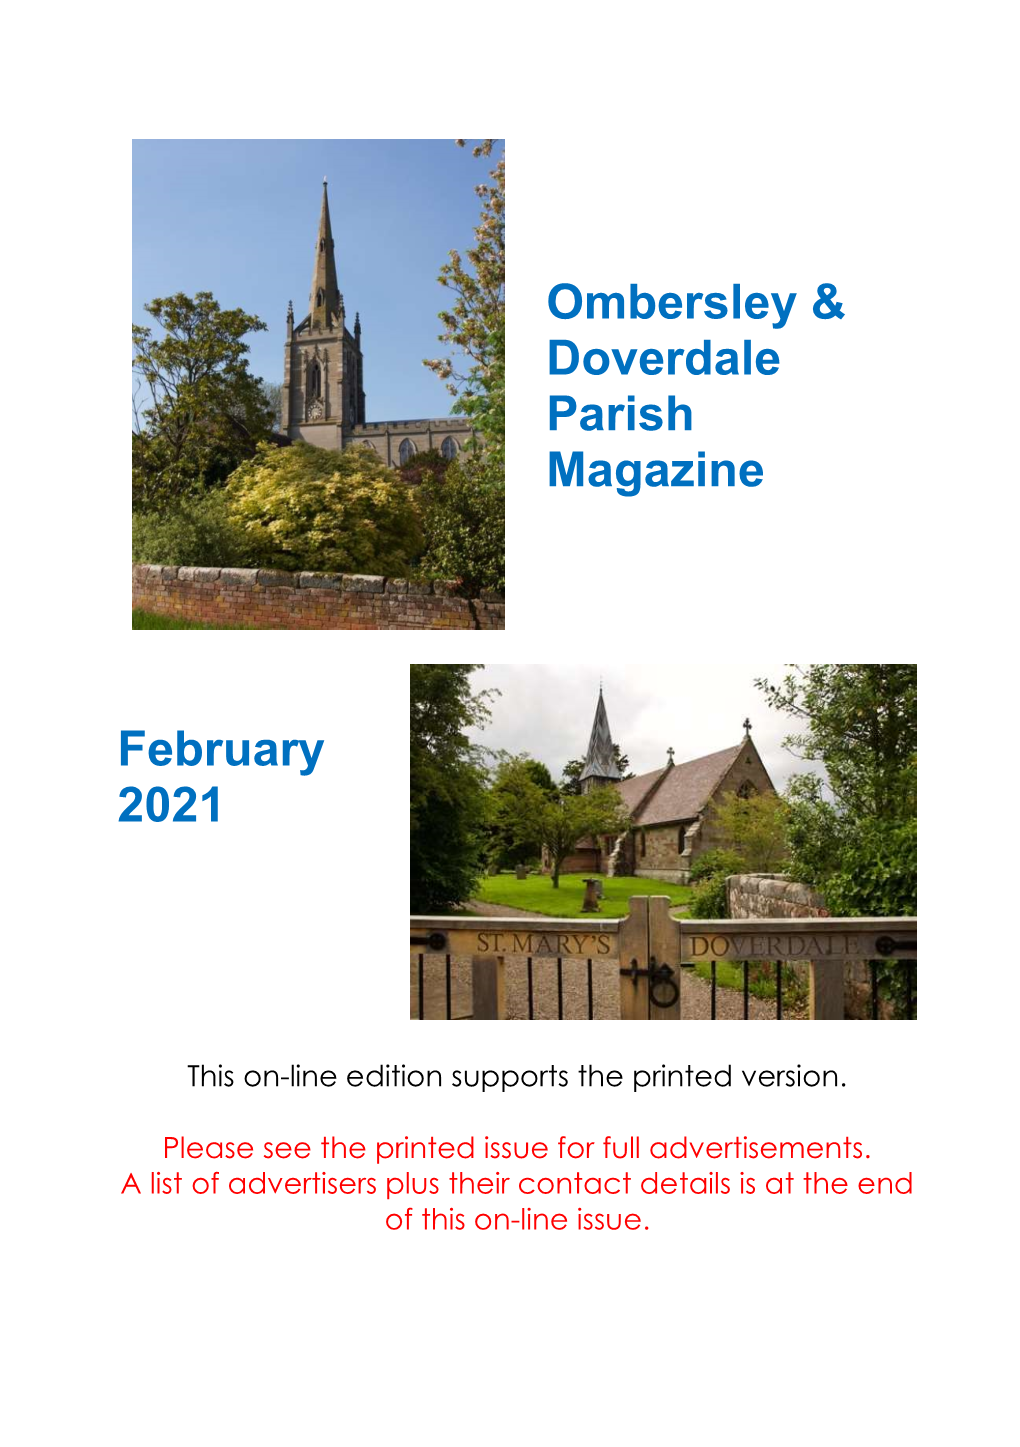 Ombersley & Doverdale Parish Magazine February 2021